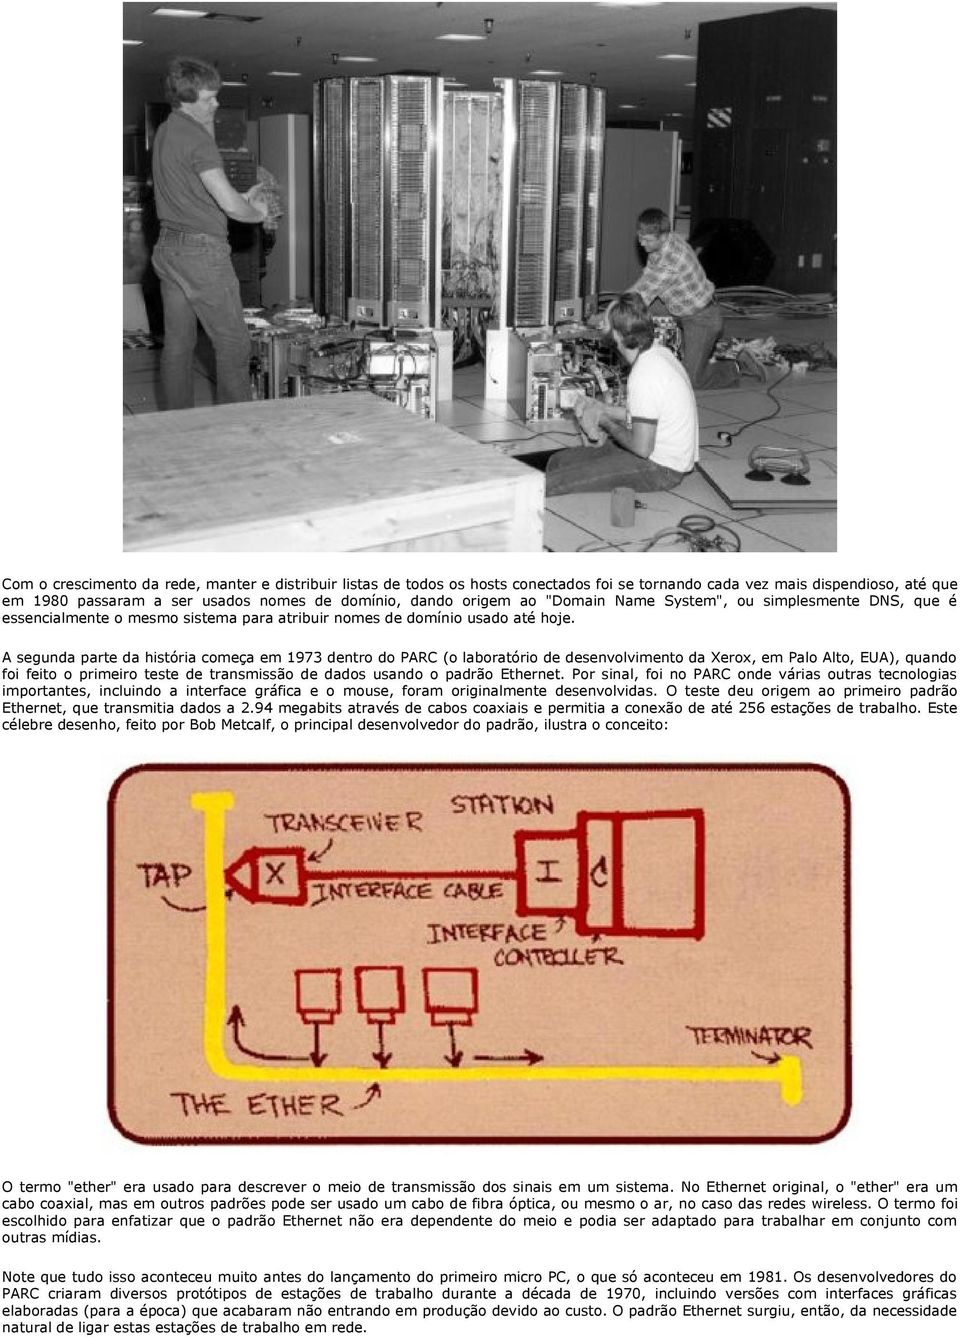 A segunda parte da história começa em 1973 dentro do PARC (o laboratório de desenvolvimento da Xerox, em Palo Alto, EUA), quando foi feito o primeiro teste de transmissão de dados usando o padrão